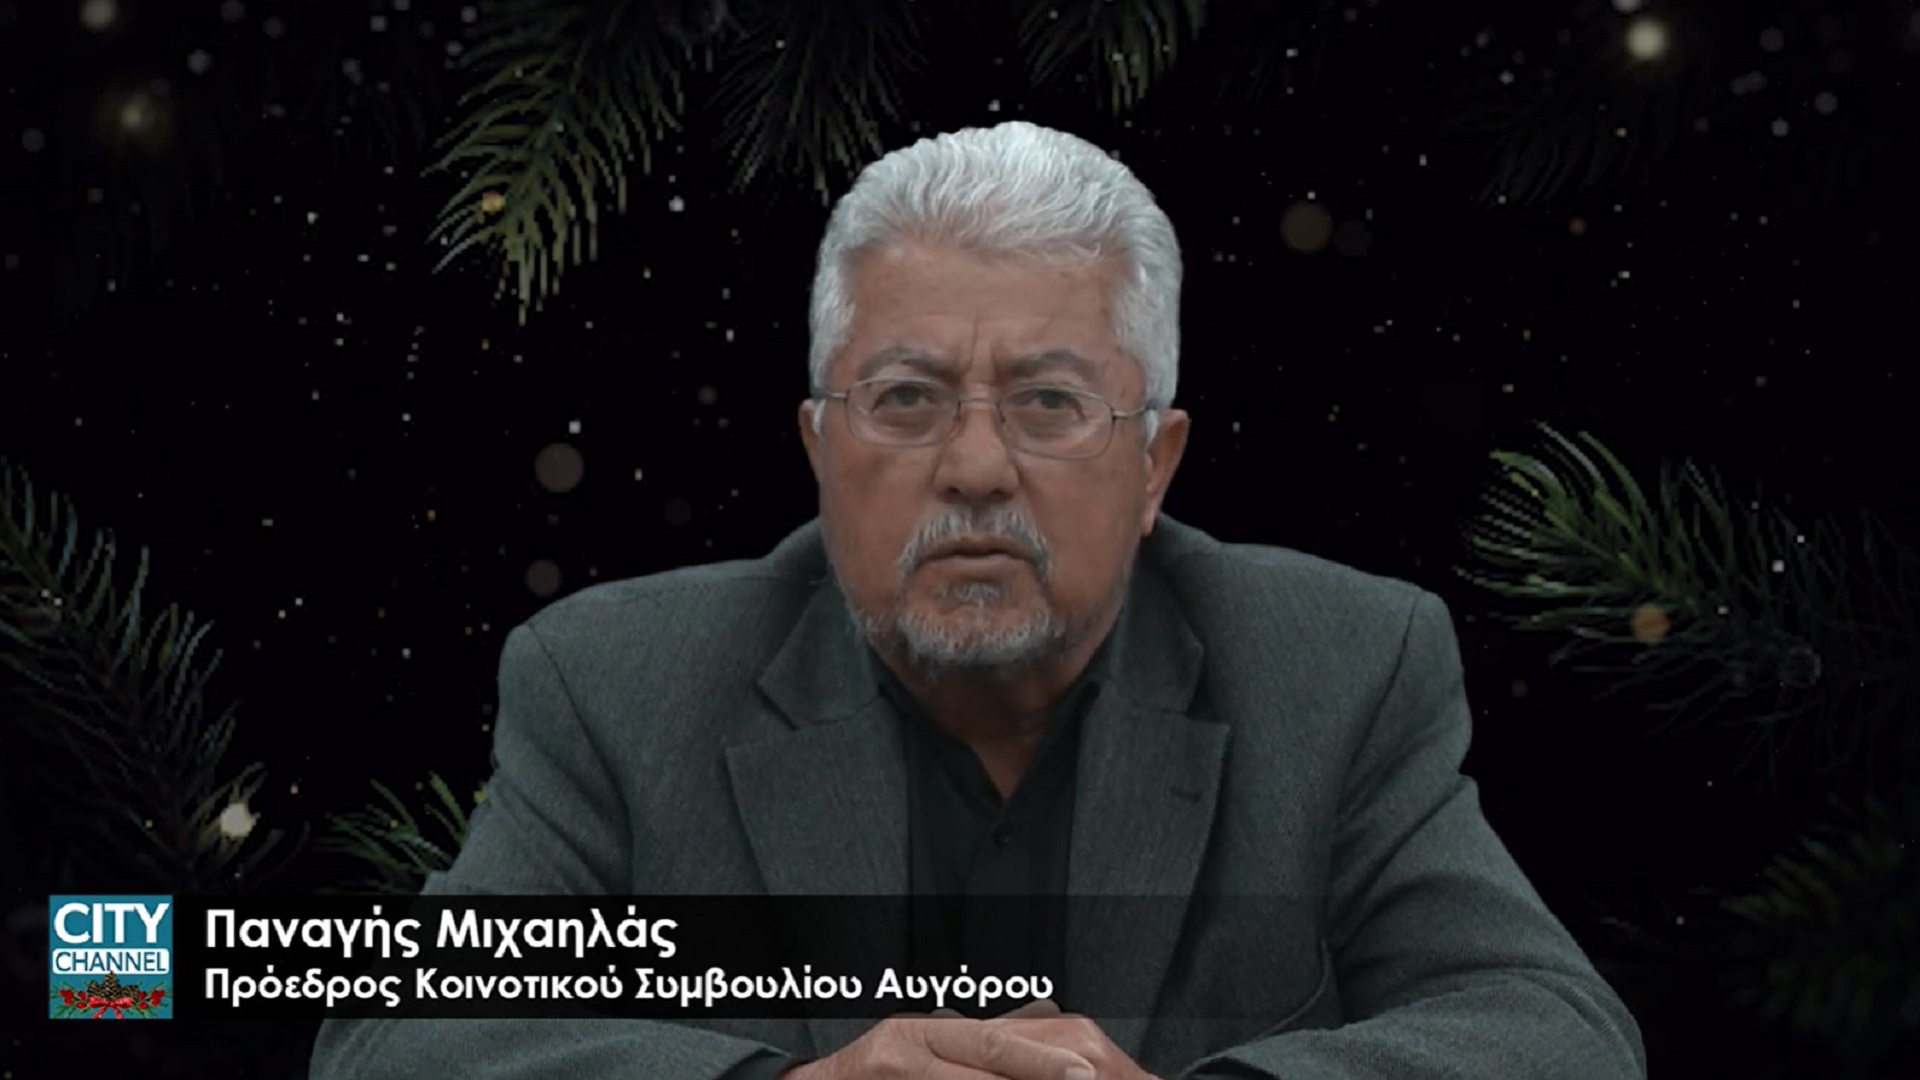 Κοινοτάρχης Αυγόρου: “Το 2023, ελπίζω να είναι μακριά από τις πανδημίες και να μας φέρει μια λύση του εθνικού μας προβλήματος”